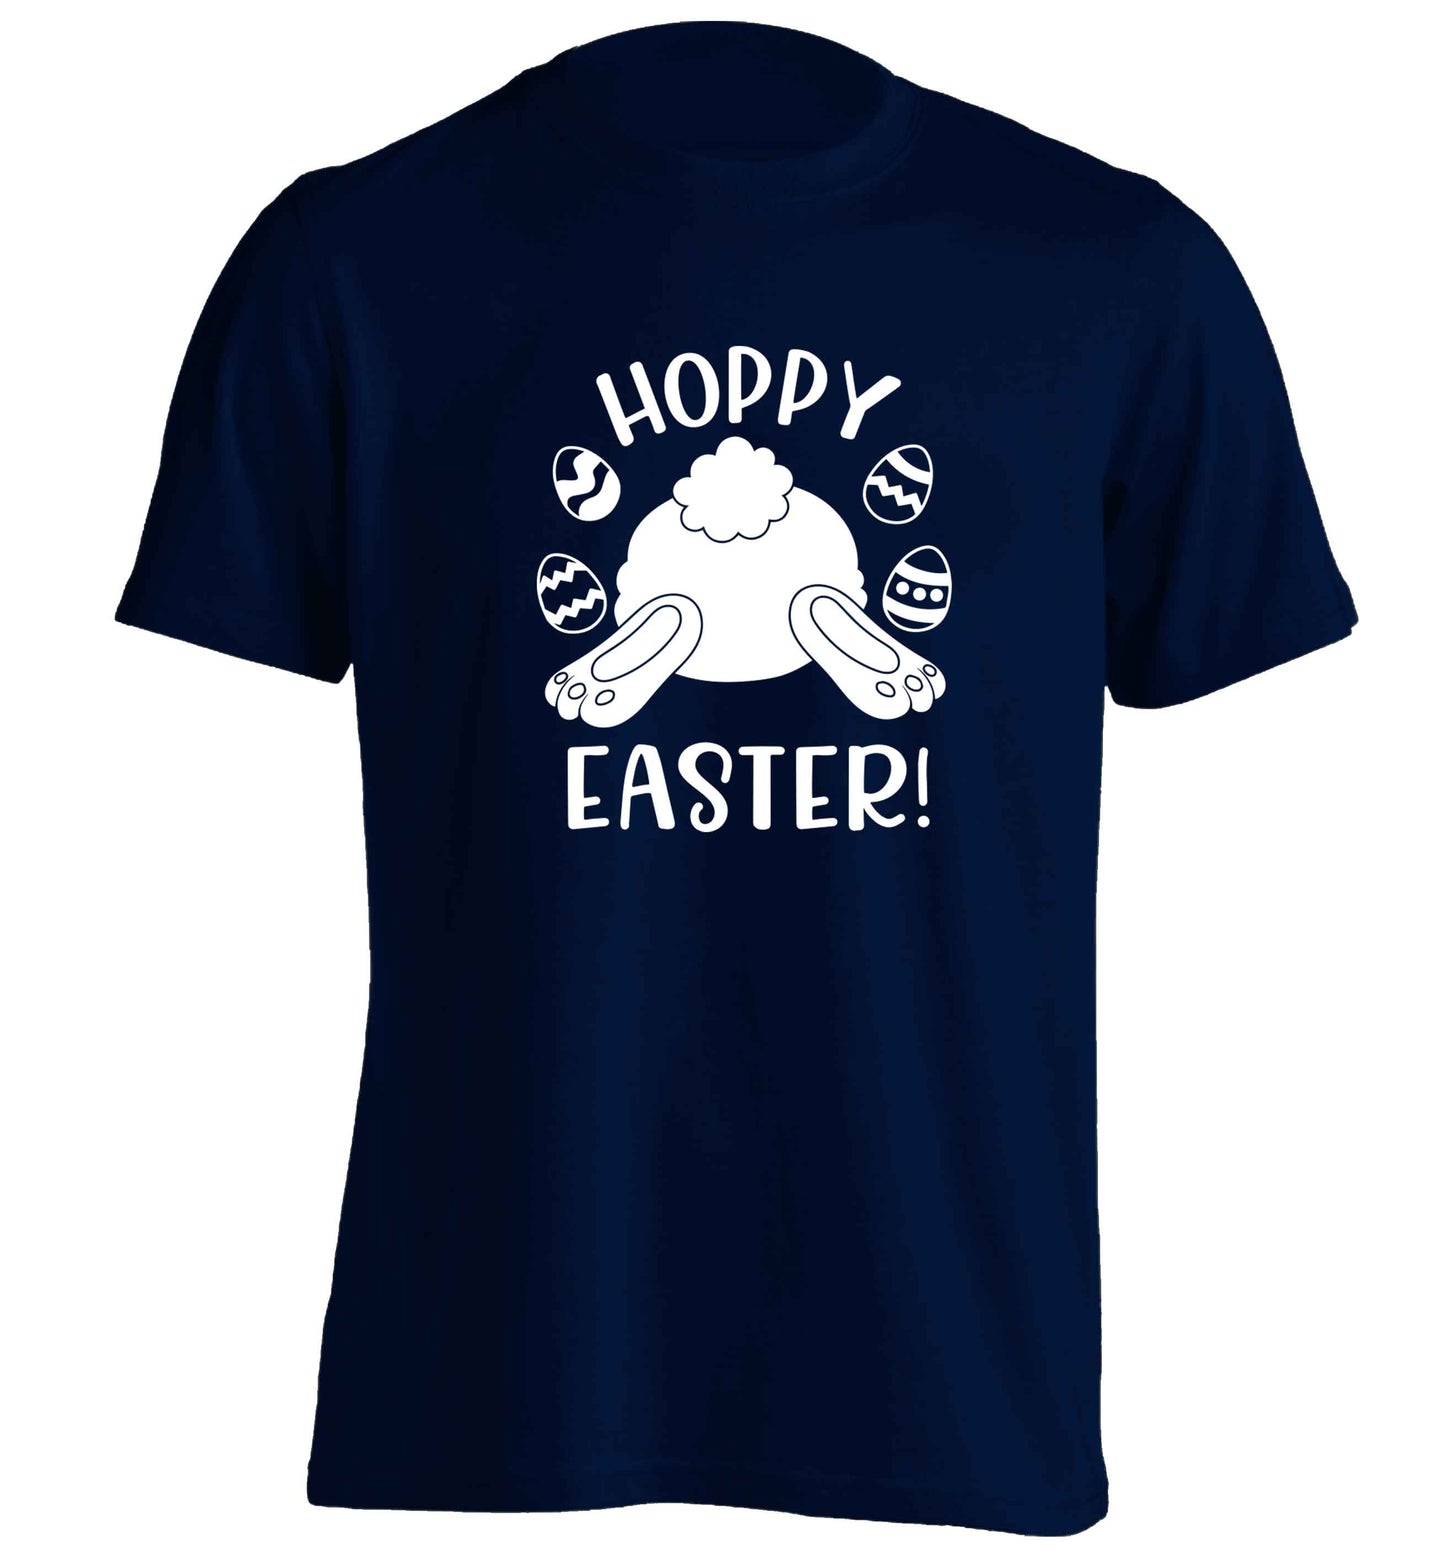 Hoppy Easter adults unisex navy Tshirt 2XL